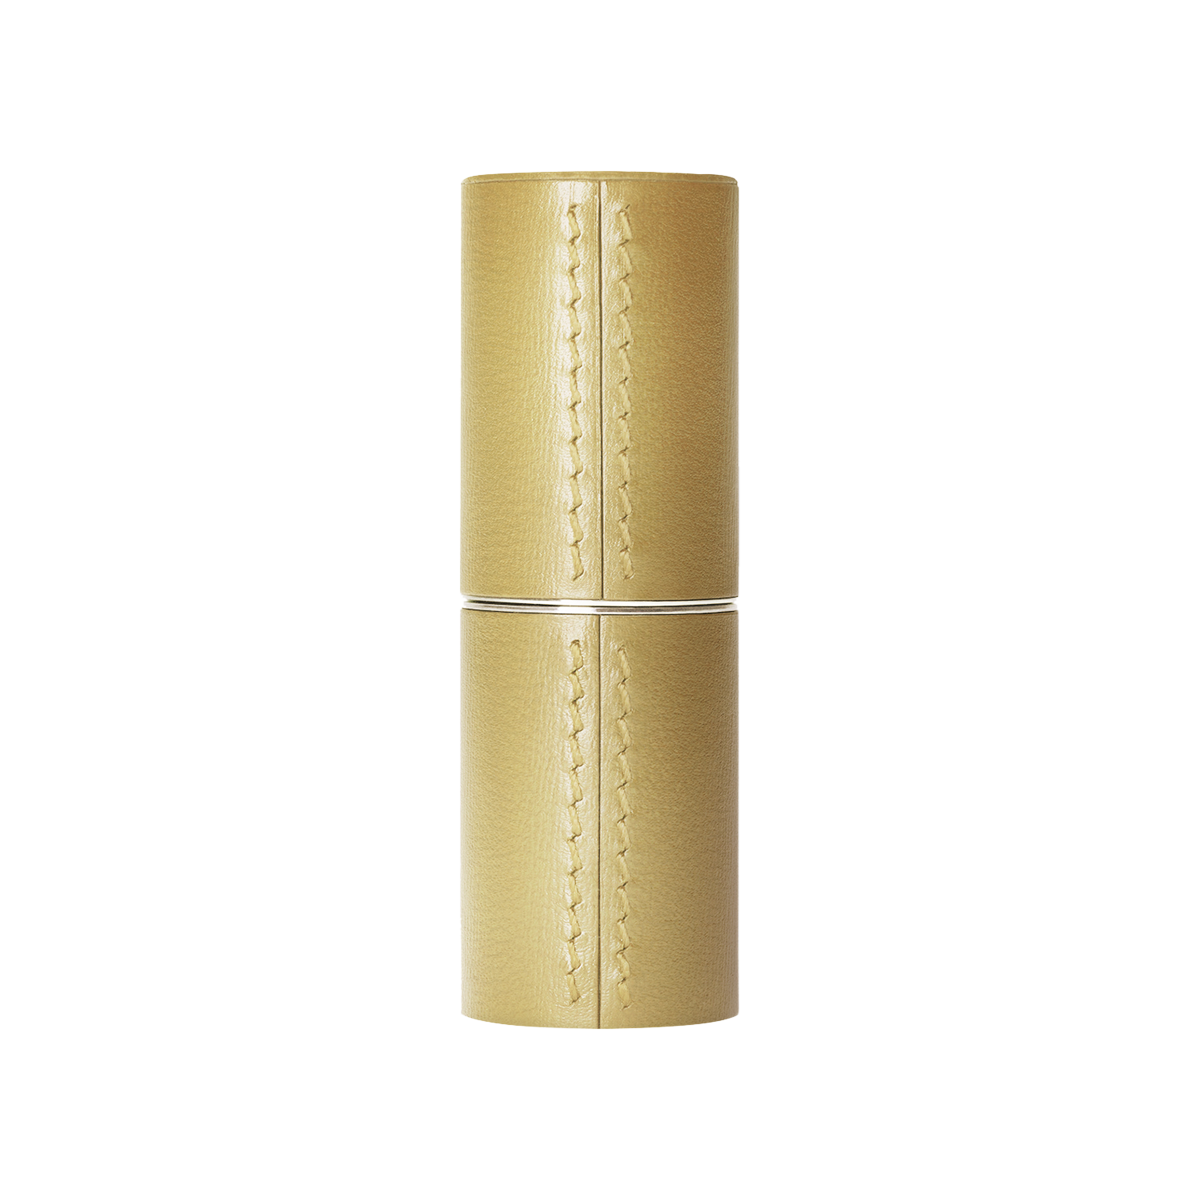 la bouche rouge, Paris - Refillable Gold Leather Lipstick case